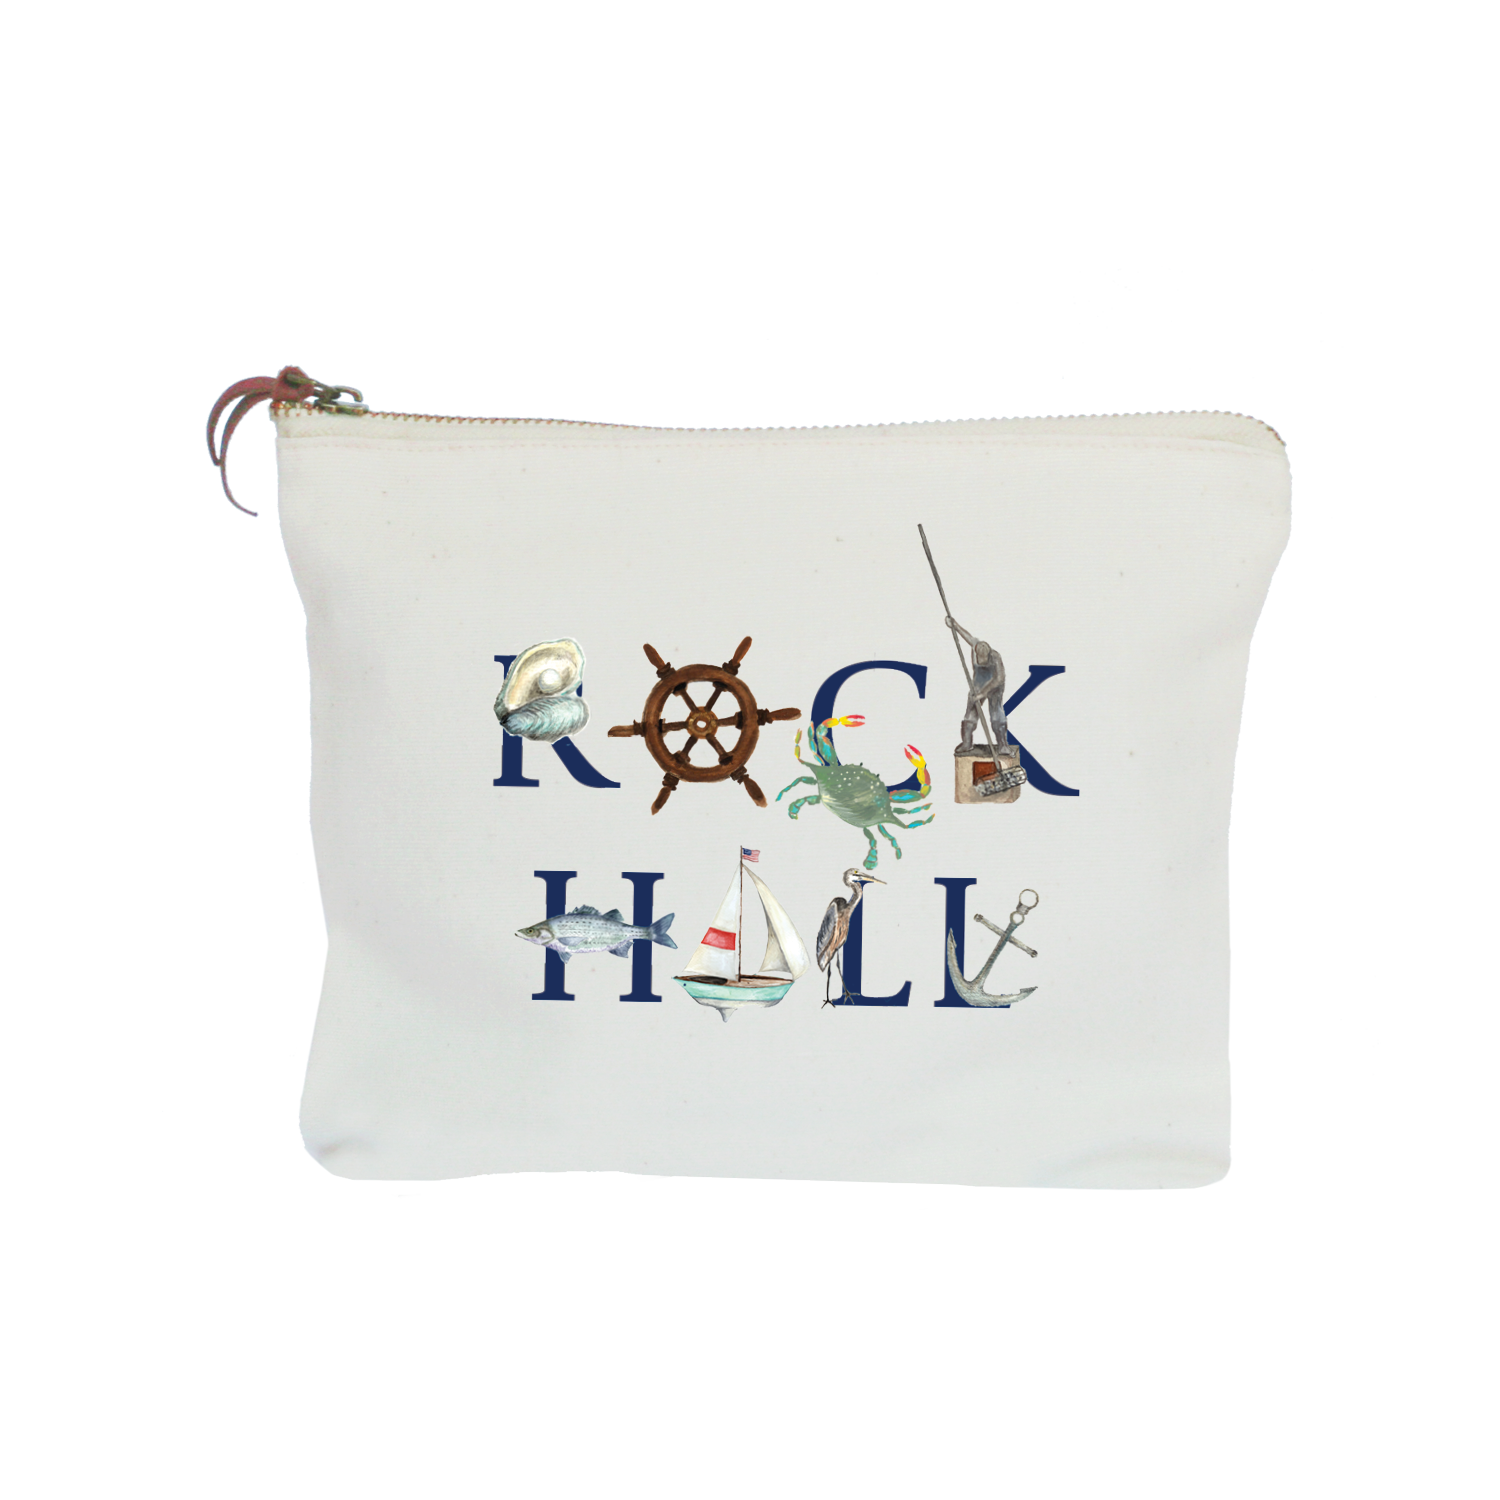 rock hall zipper pouch